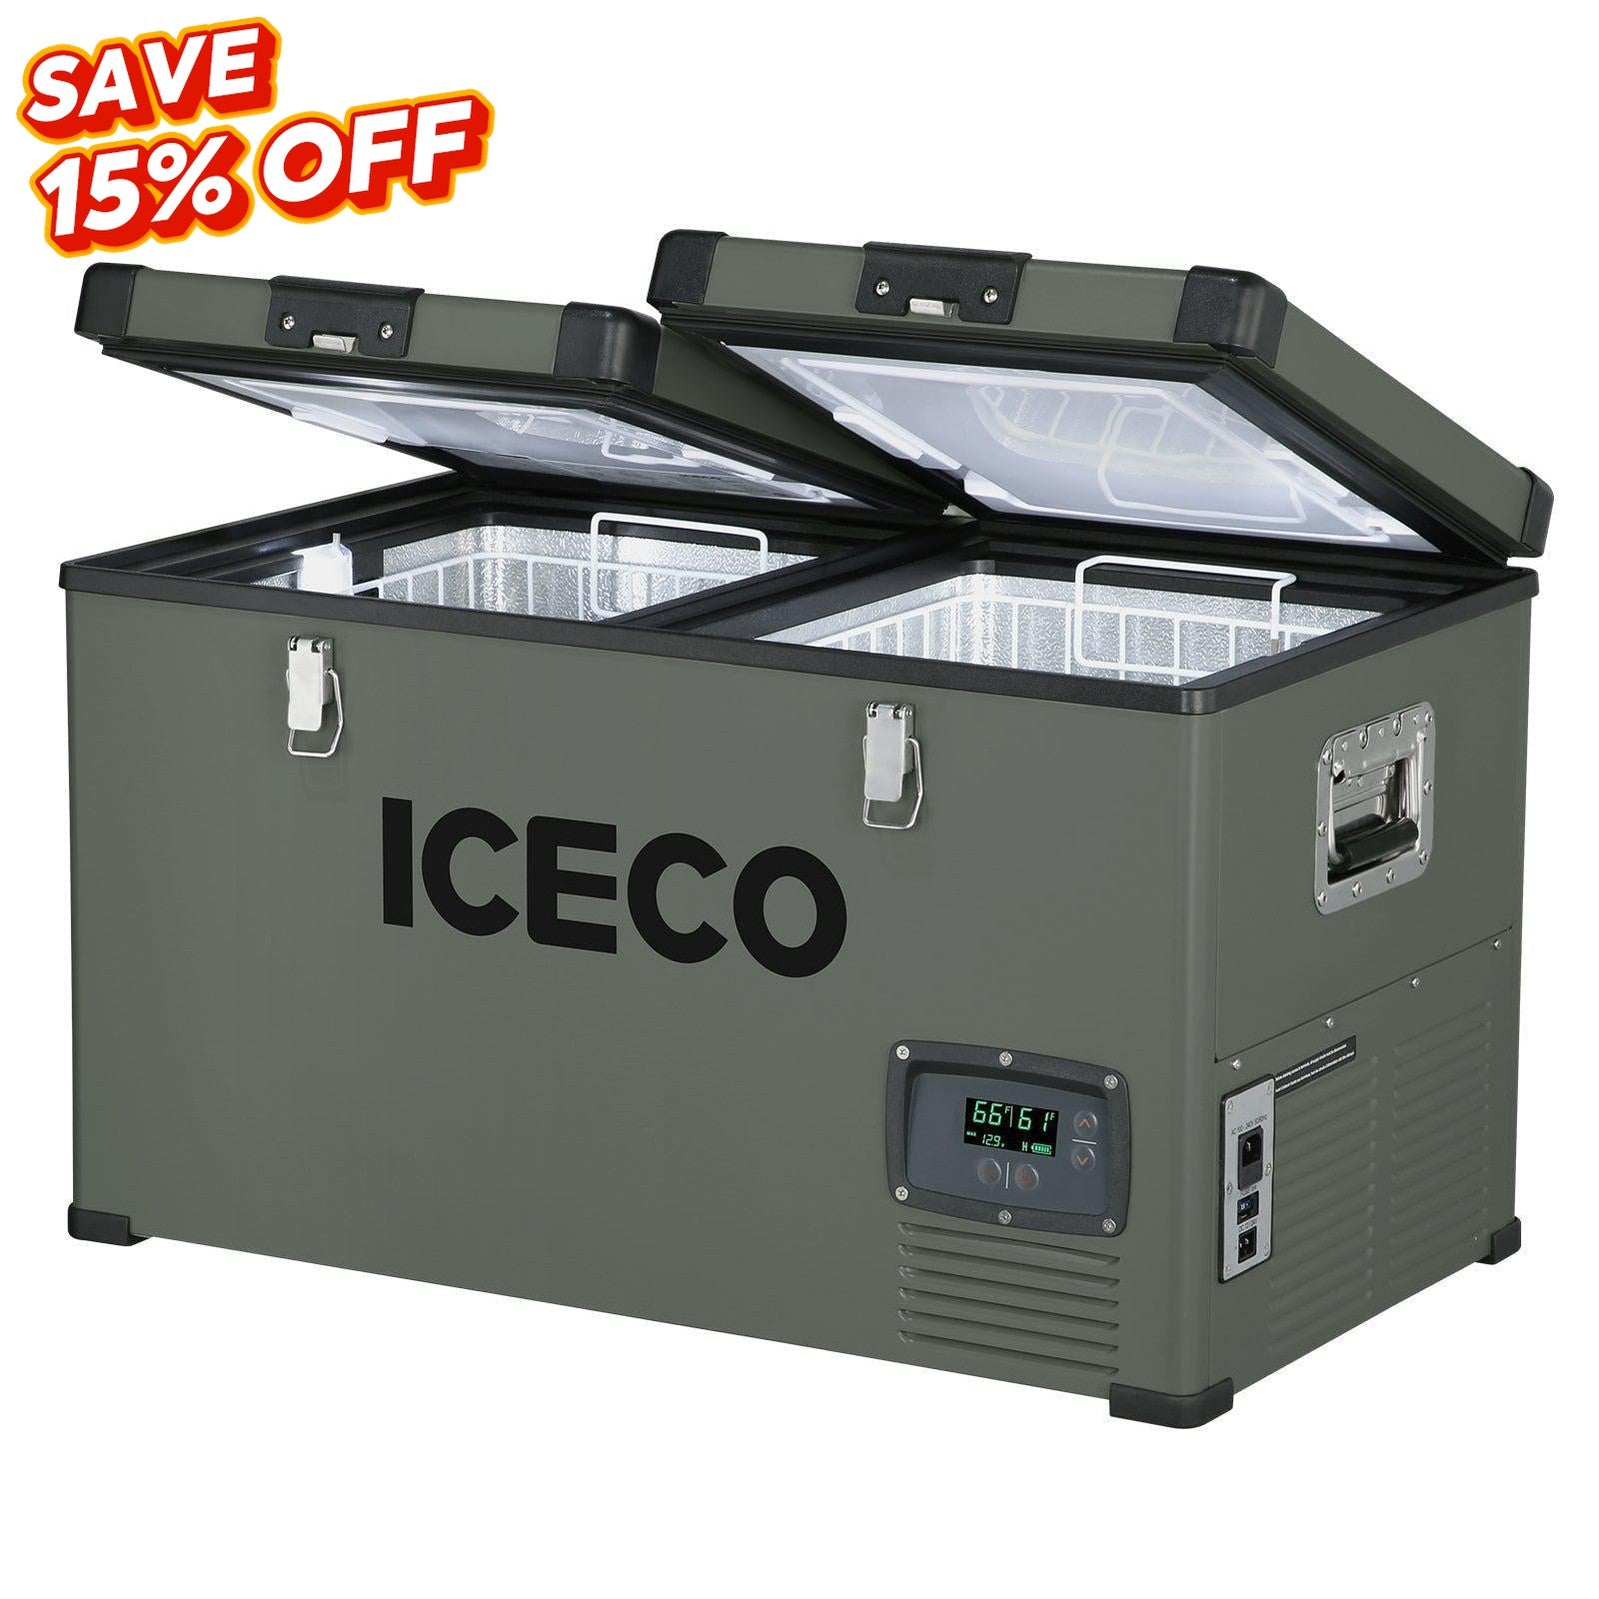 ICECO VL60 Dual Zone Fridge Freezer with Cover| ICECO-Portable Fridge-www.icecofreezer.com